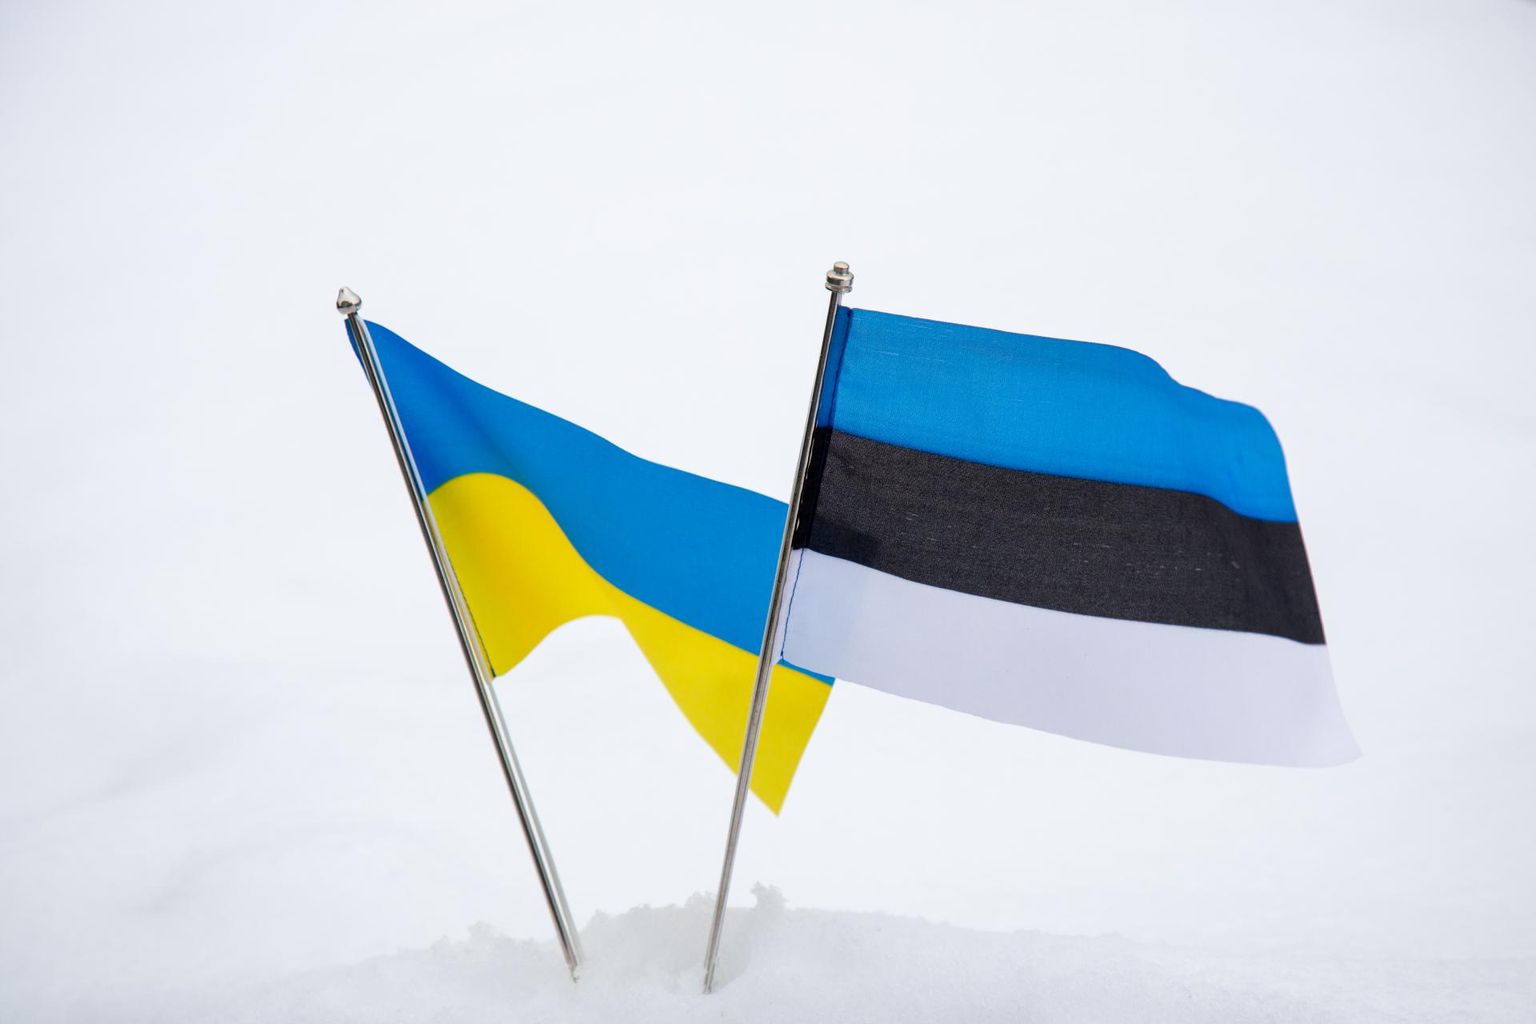 22.02.2022, Eesti ja Ukraina lipp. Ukraina toetuseks.
FOTO: Marko Saarm